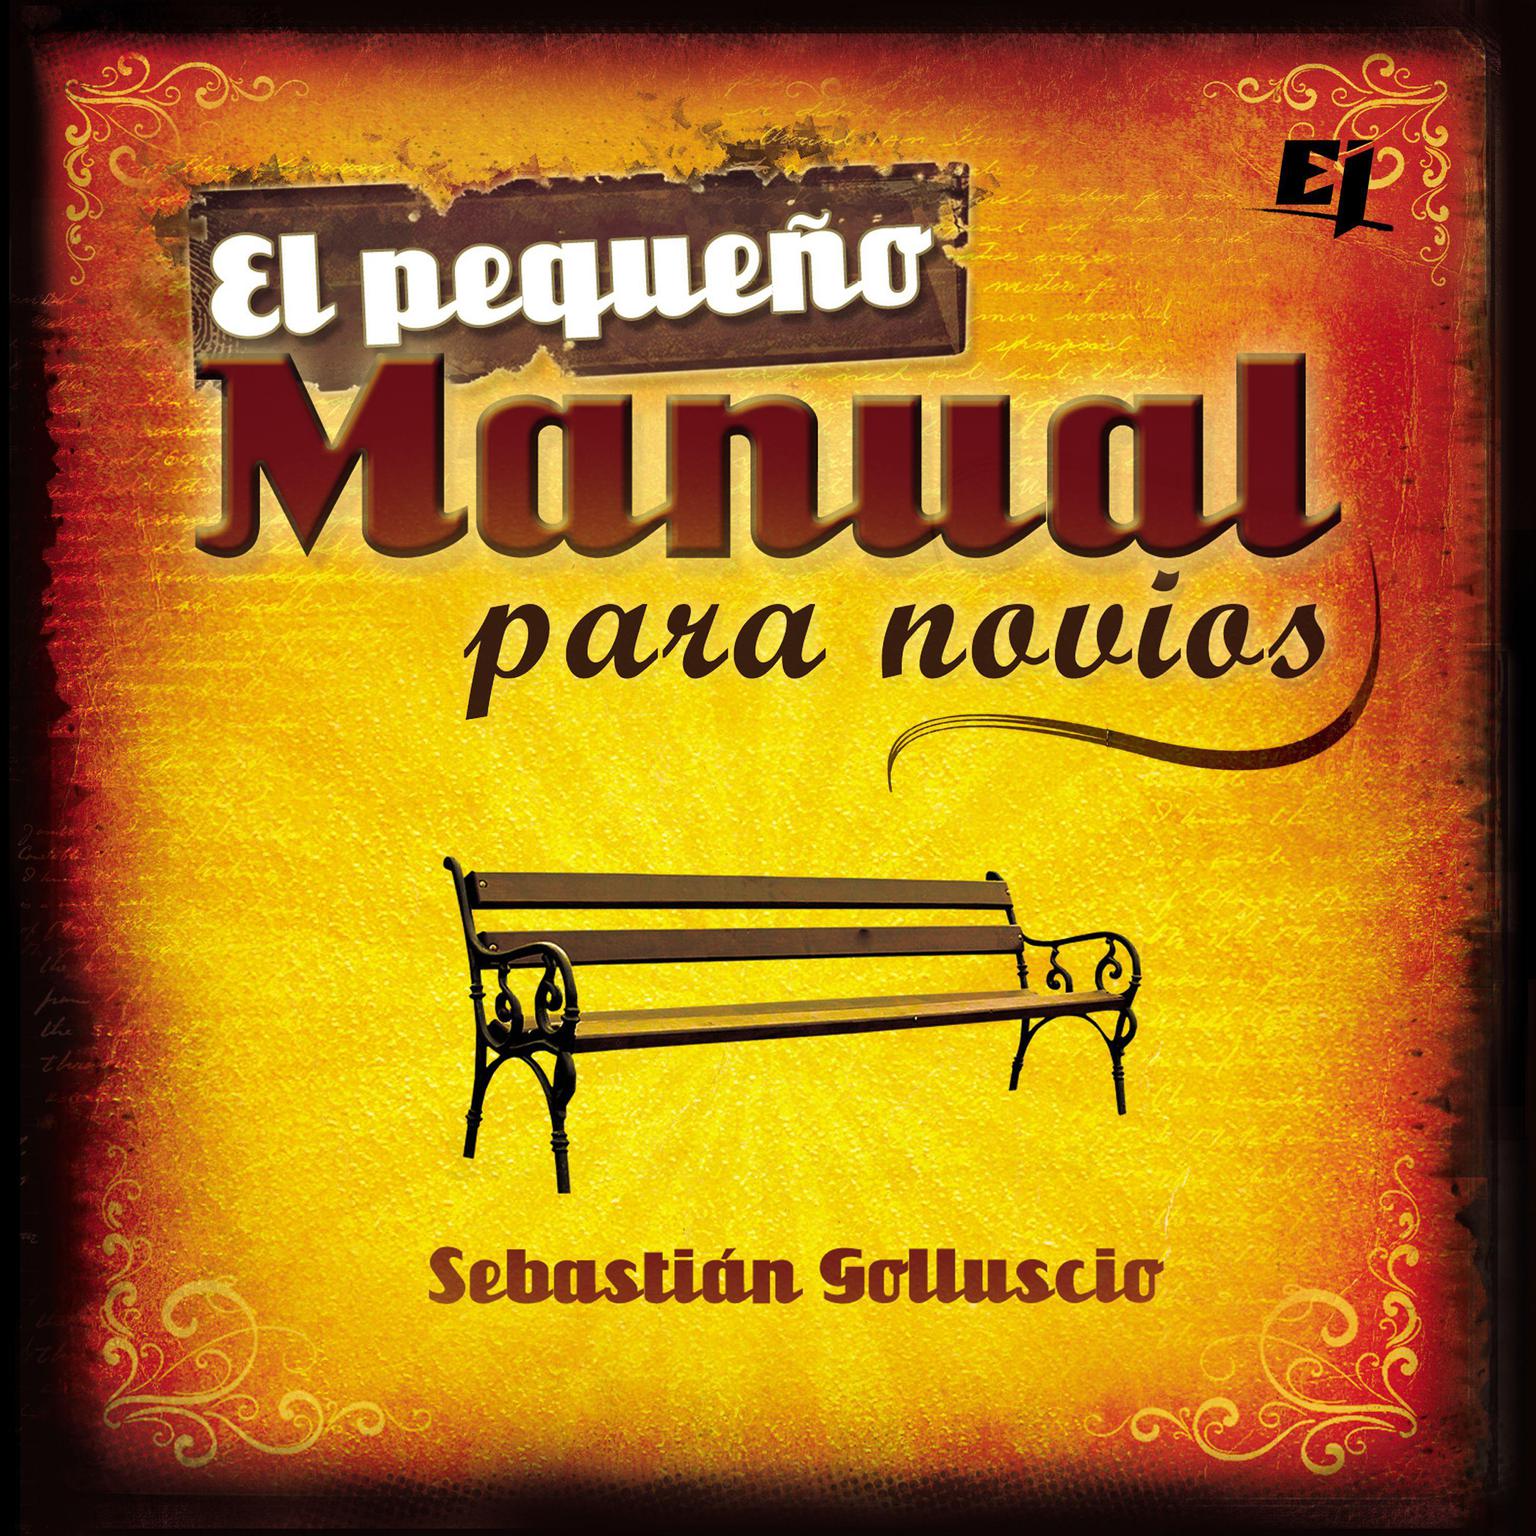 El pequeño manual para novios Audiobook, by Sebastian Andres Golluscio